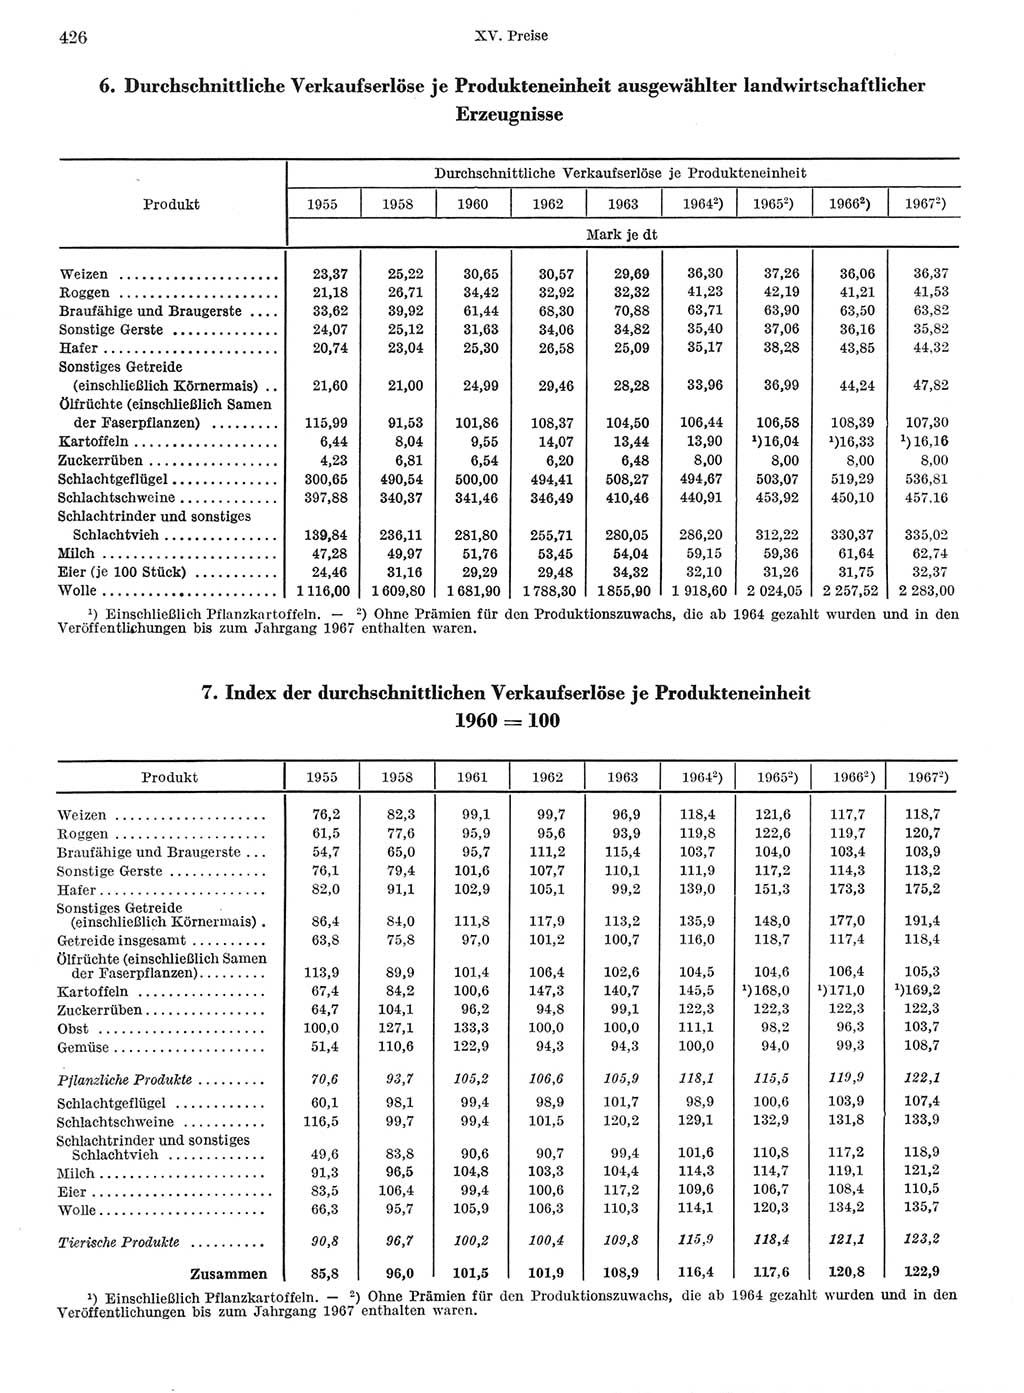 Statistisches Jahrbuch der Deutschen Demokratischen Republik (DDR) 1968, Seite 426 (Stat. Jb. DDR 1968, S. 426)